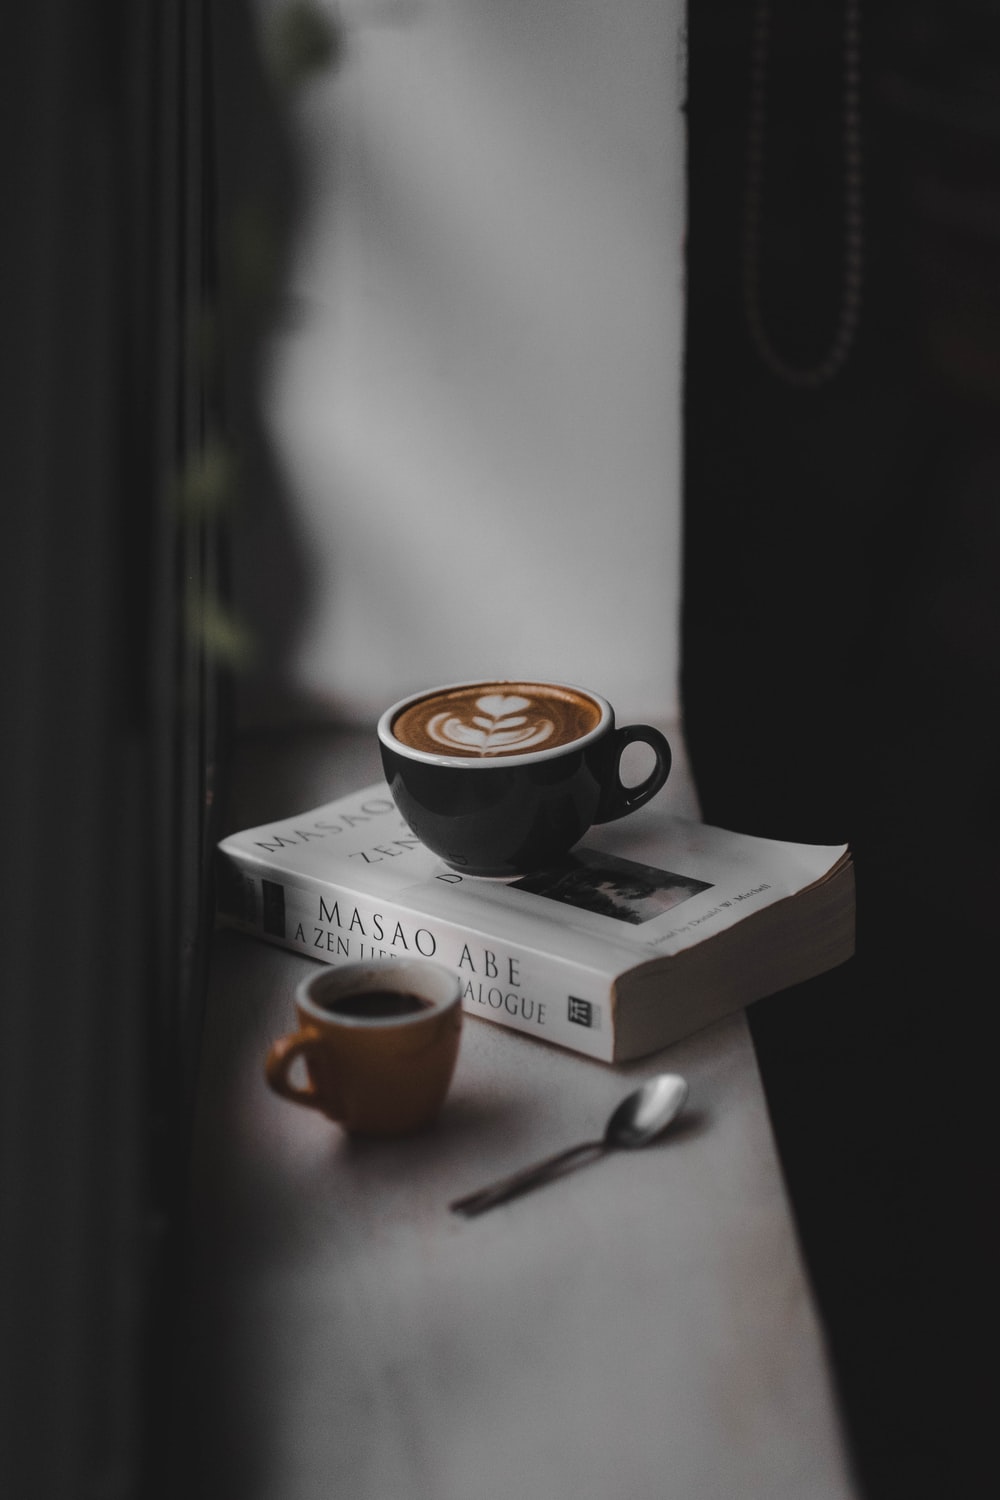 HÌnh ảnh cà phê và sách đẹp